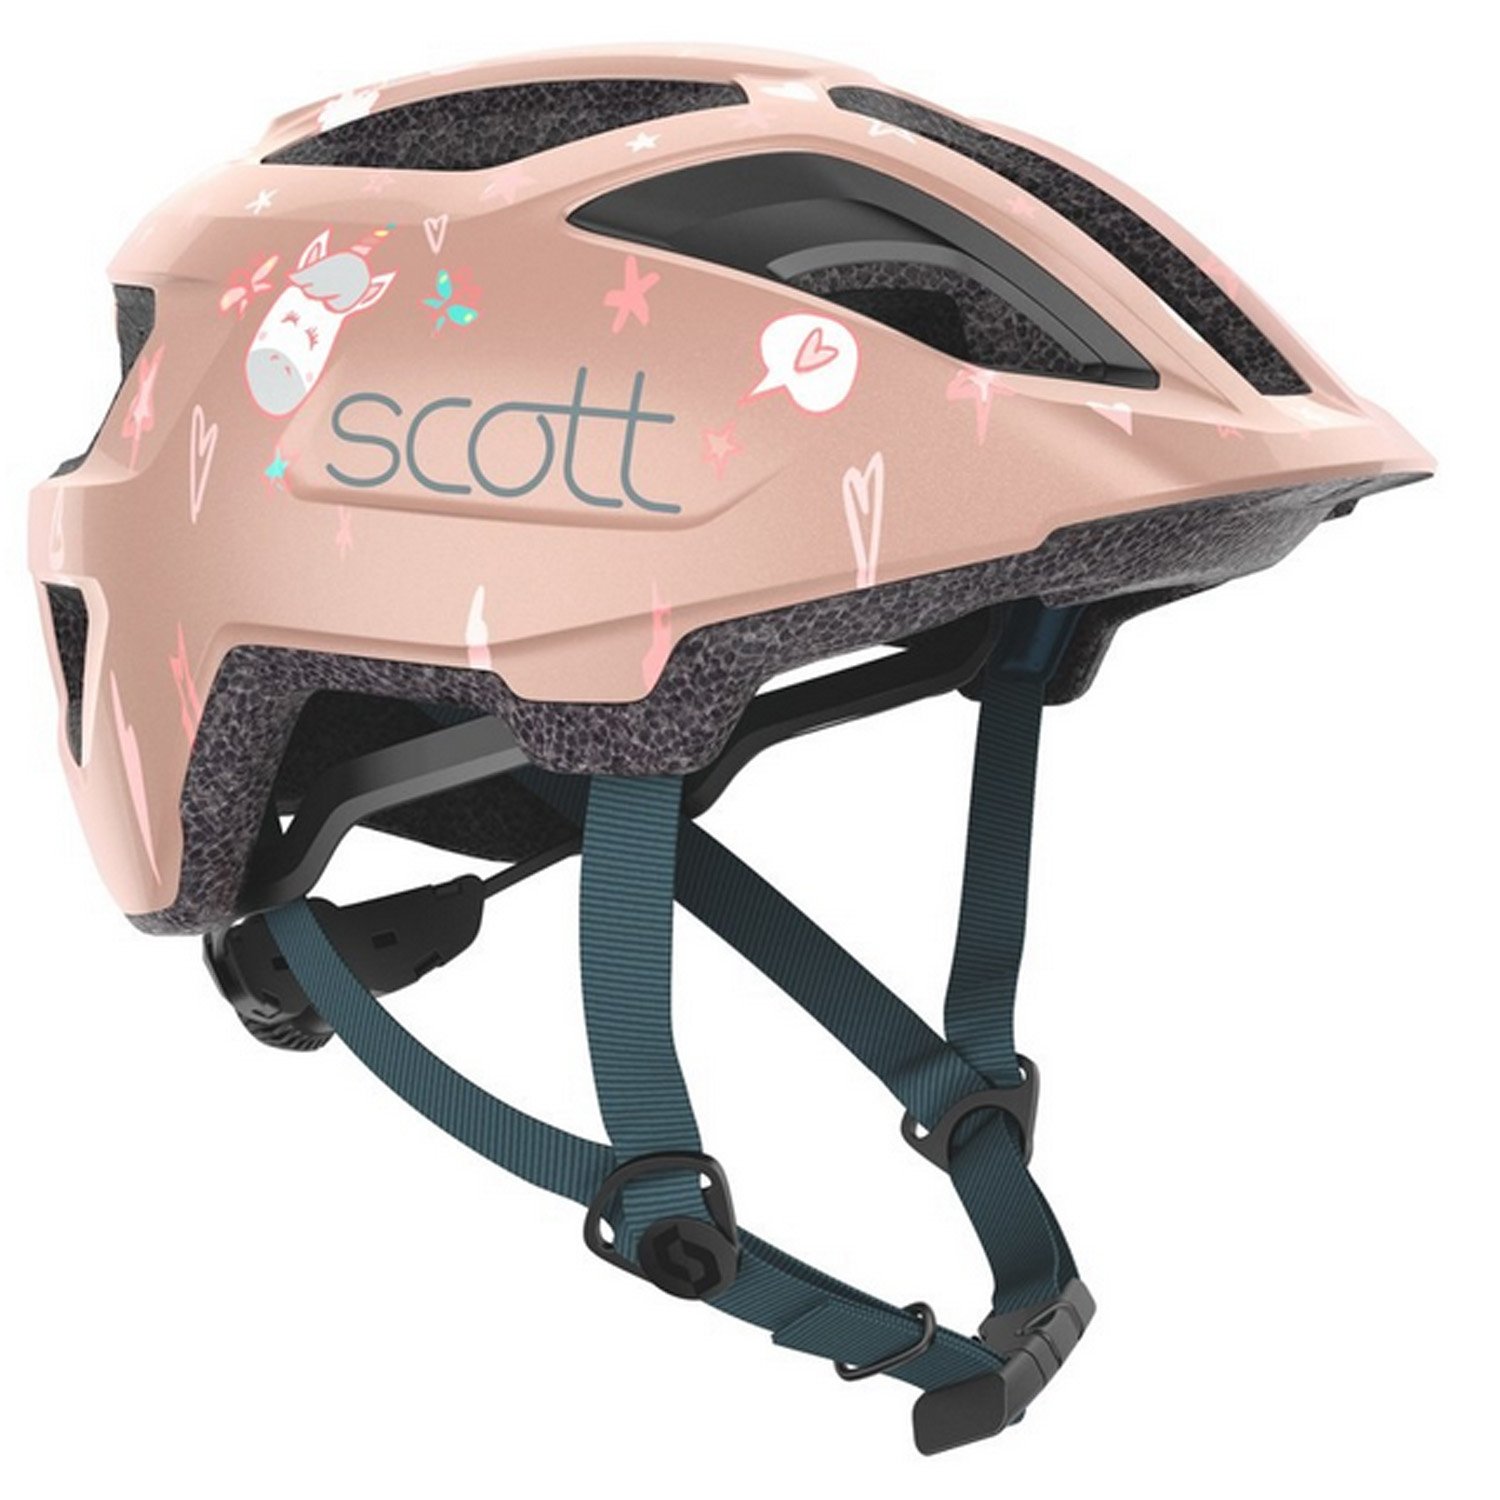 Велошлем SCOTT Kid Spunto (CE), crystal pink, ES275235-7174 крылья велосипедные hog yfp 37 20 24 с интегрированным задним габаритным фонарем пластик черные hog 37